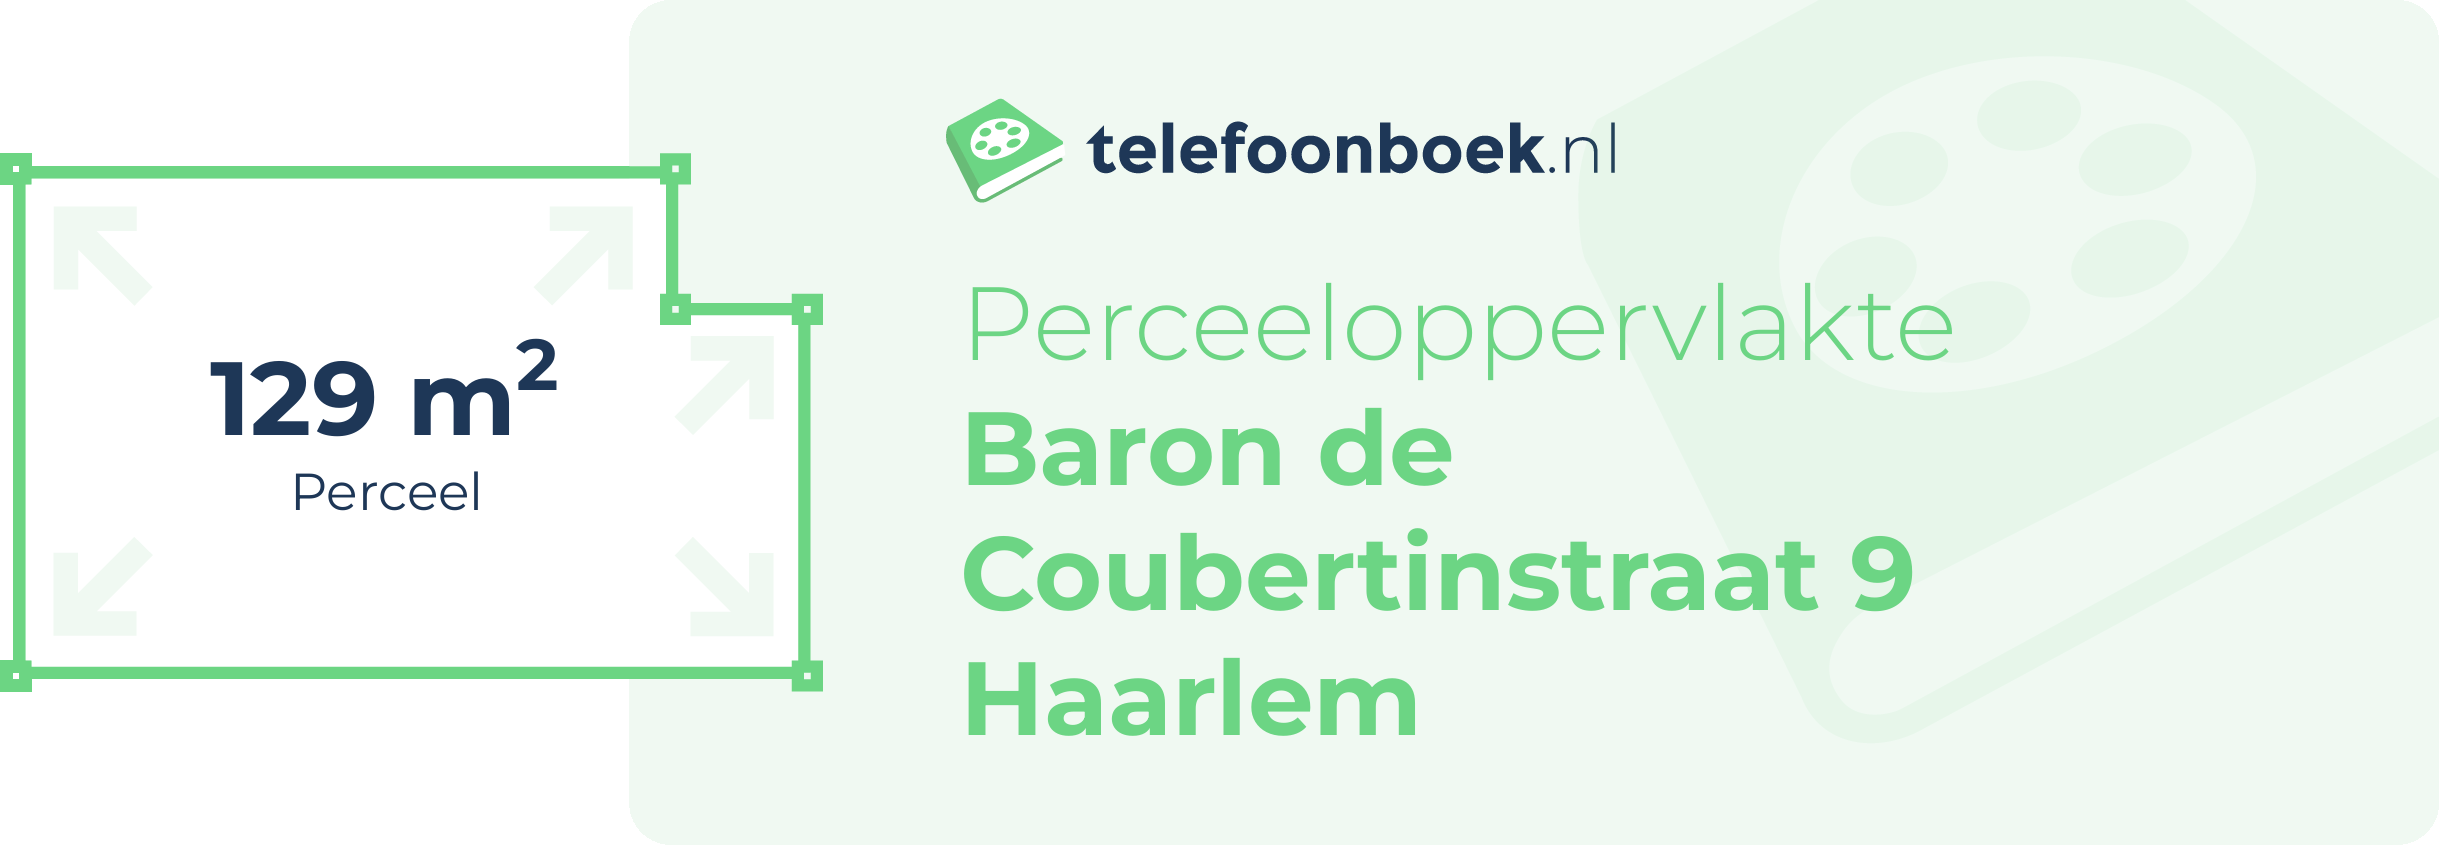 Perceeloppervlakte Baron De Coubertinstraat 9 Haarlem